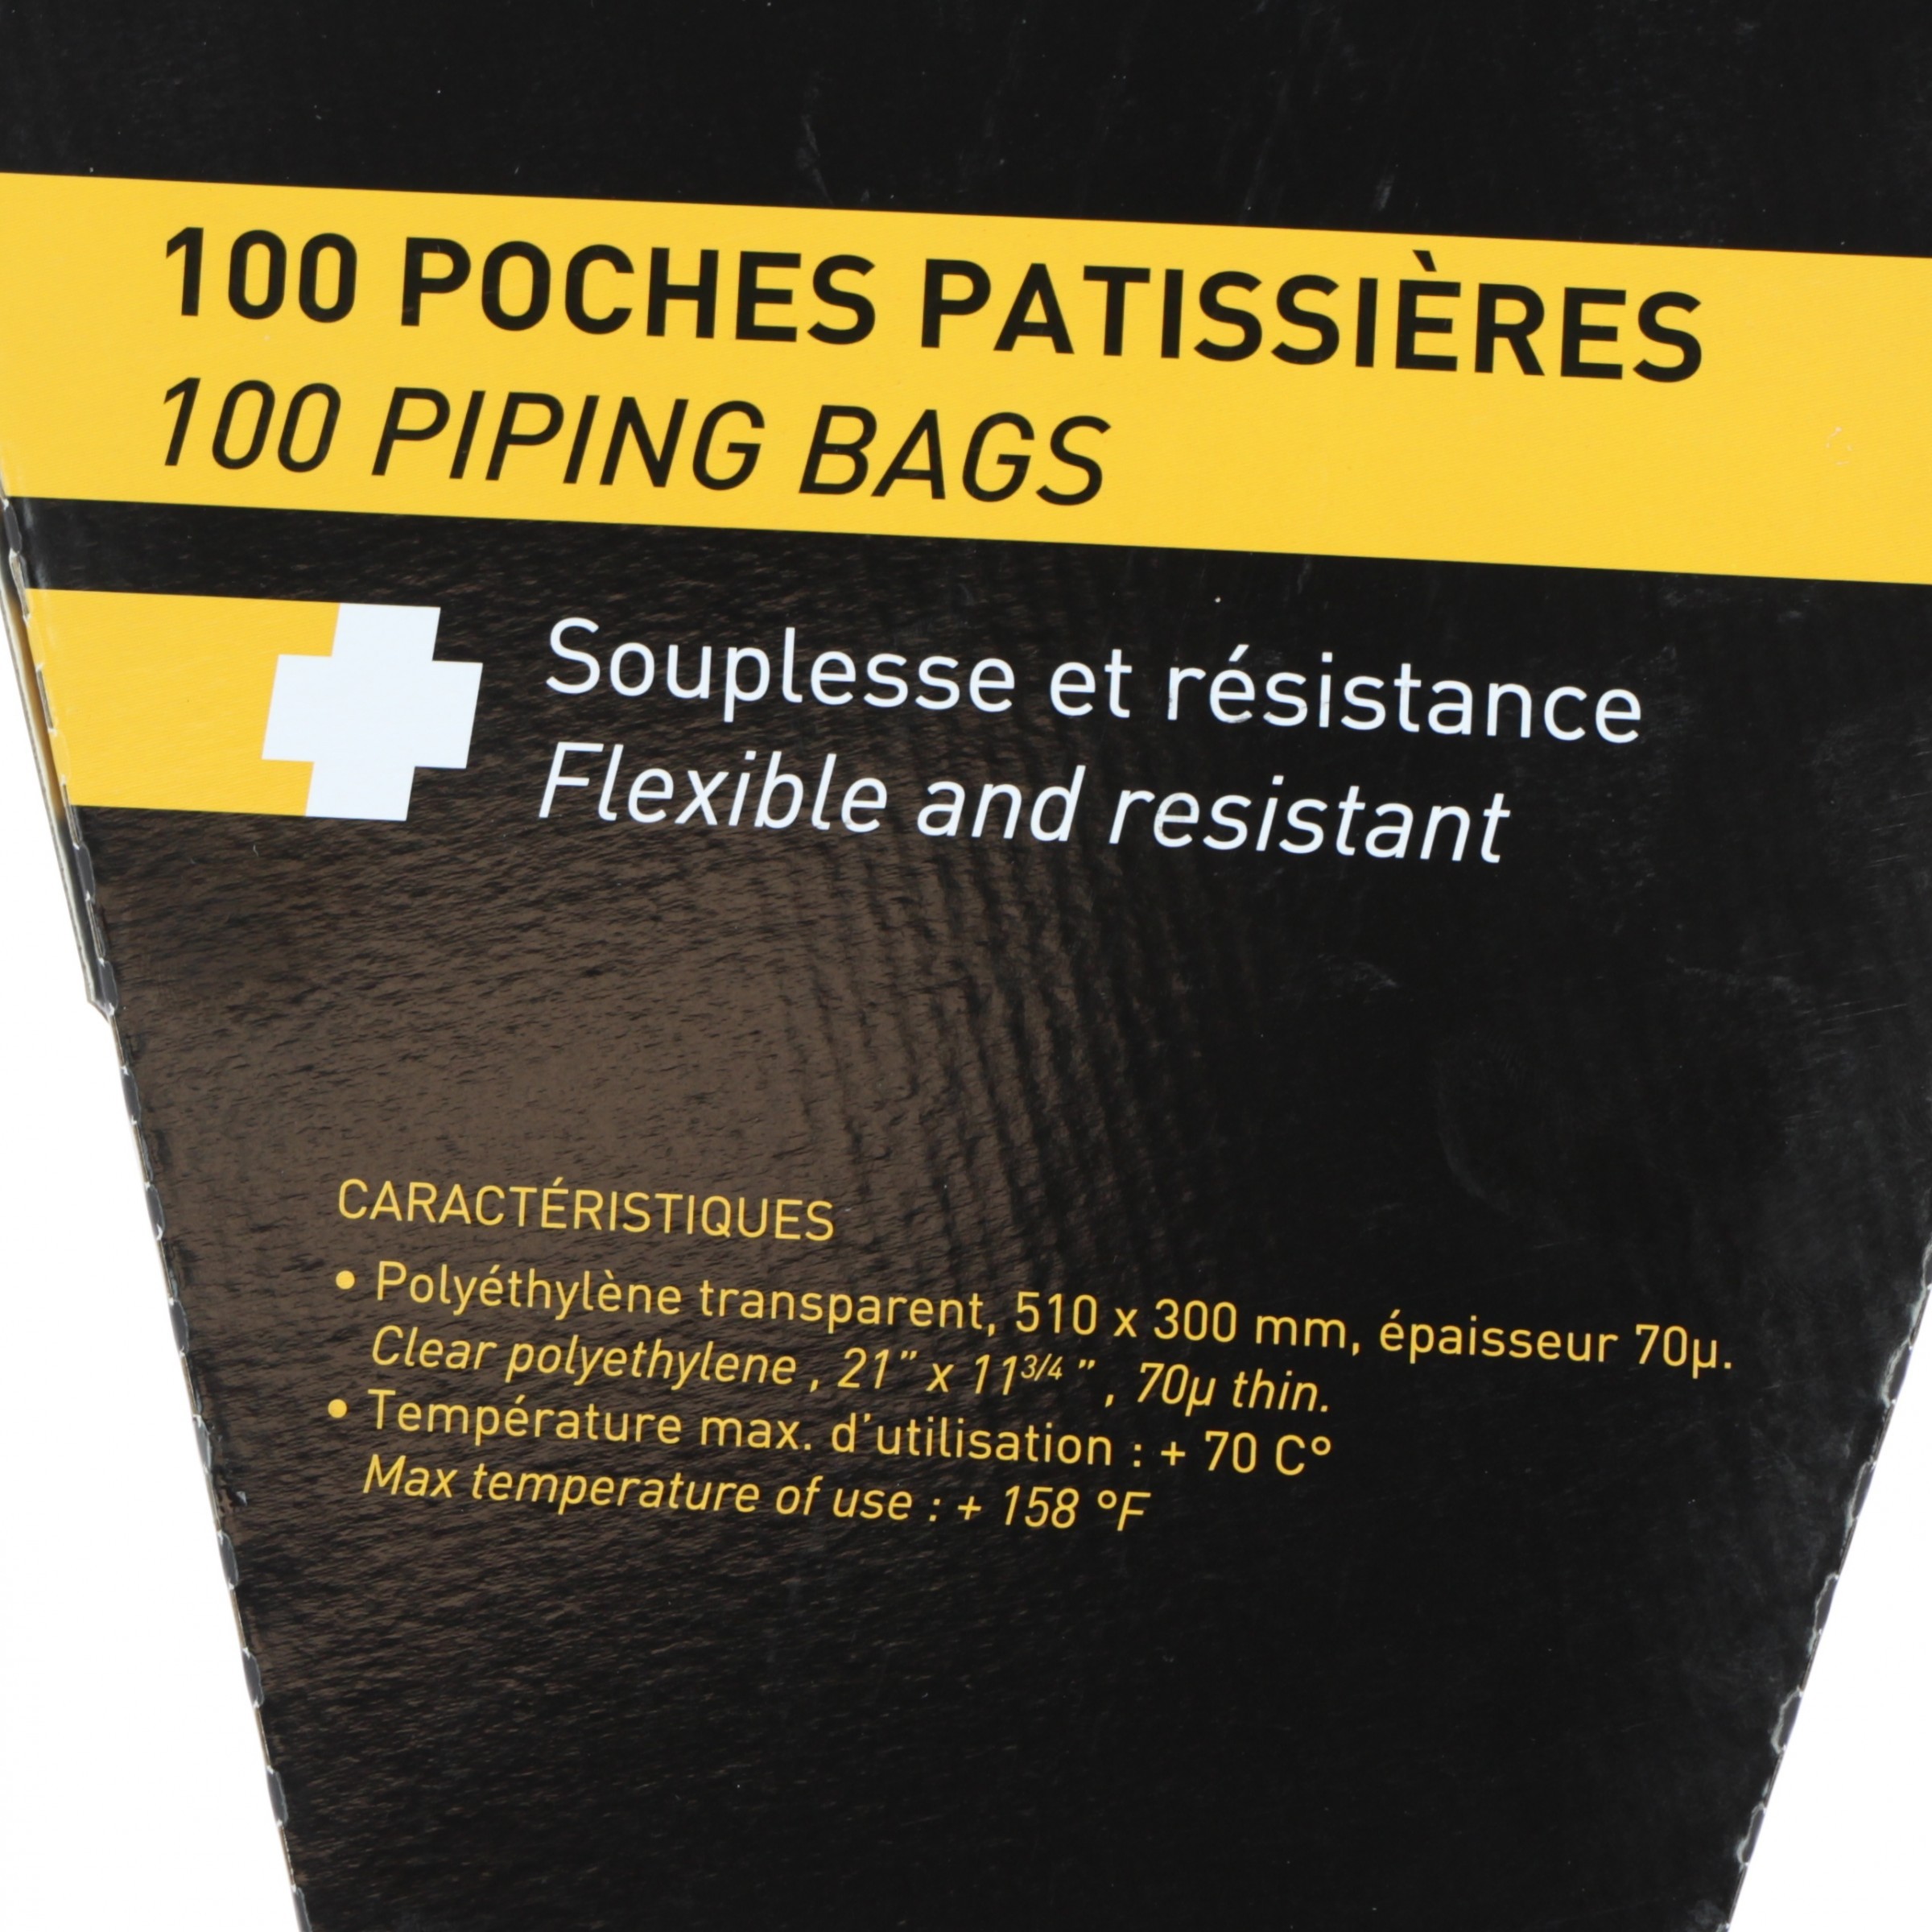 100 poches pâtissières à douilles transparentes jetables 51 cm -  Matfer-Bourgeat